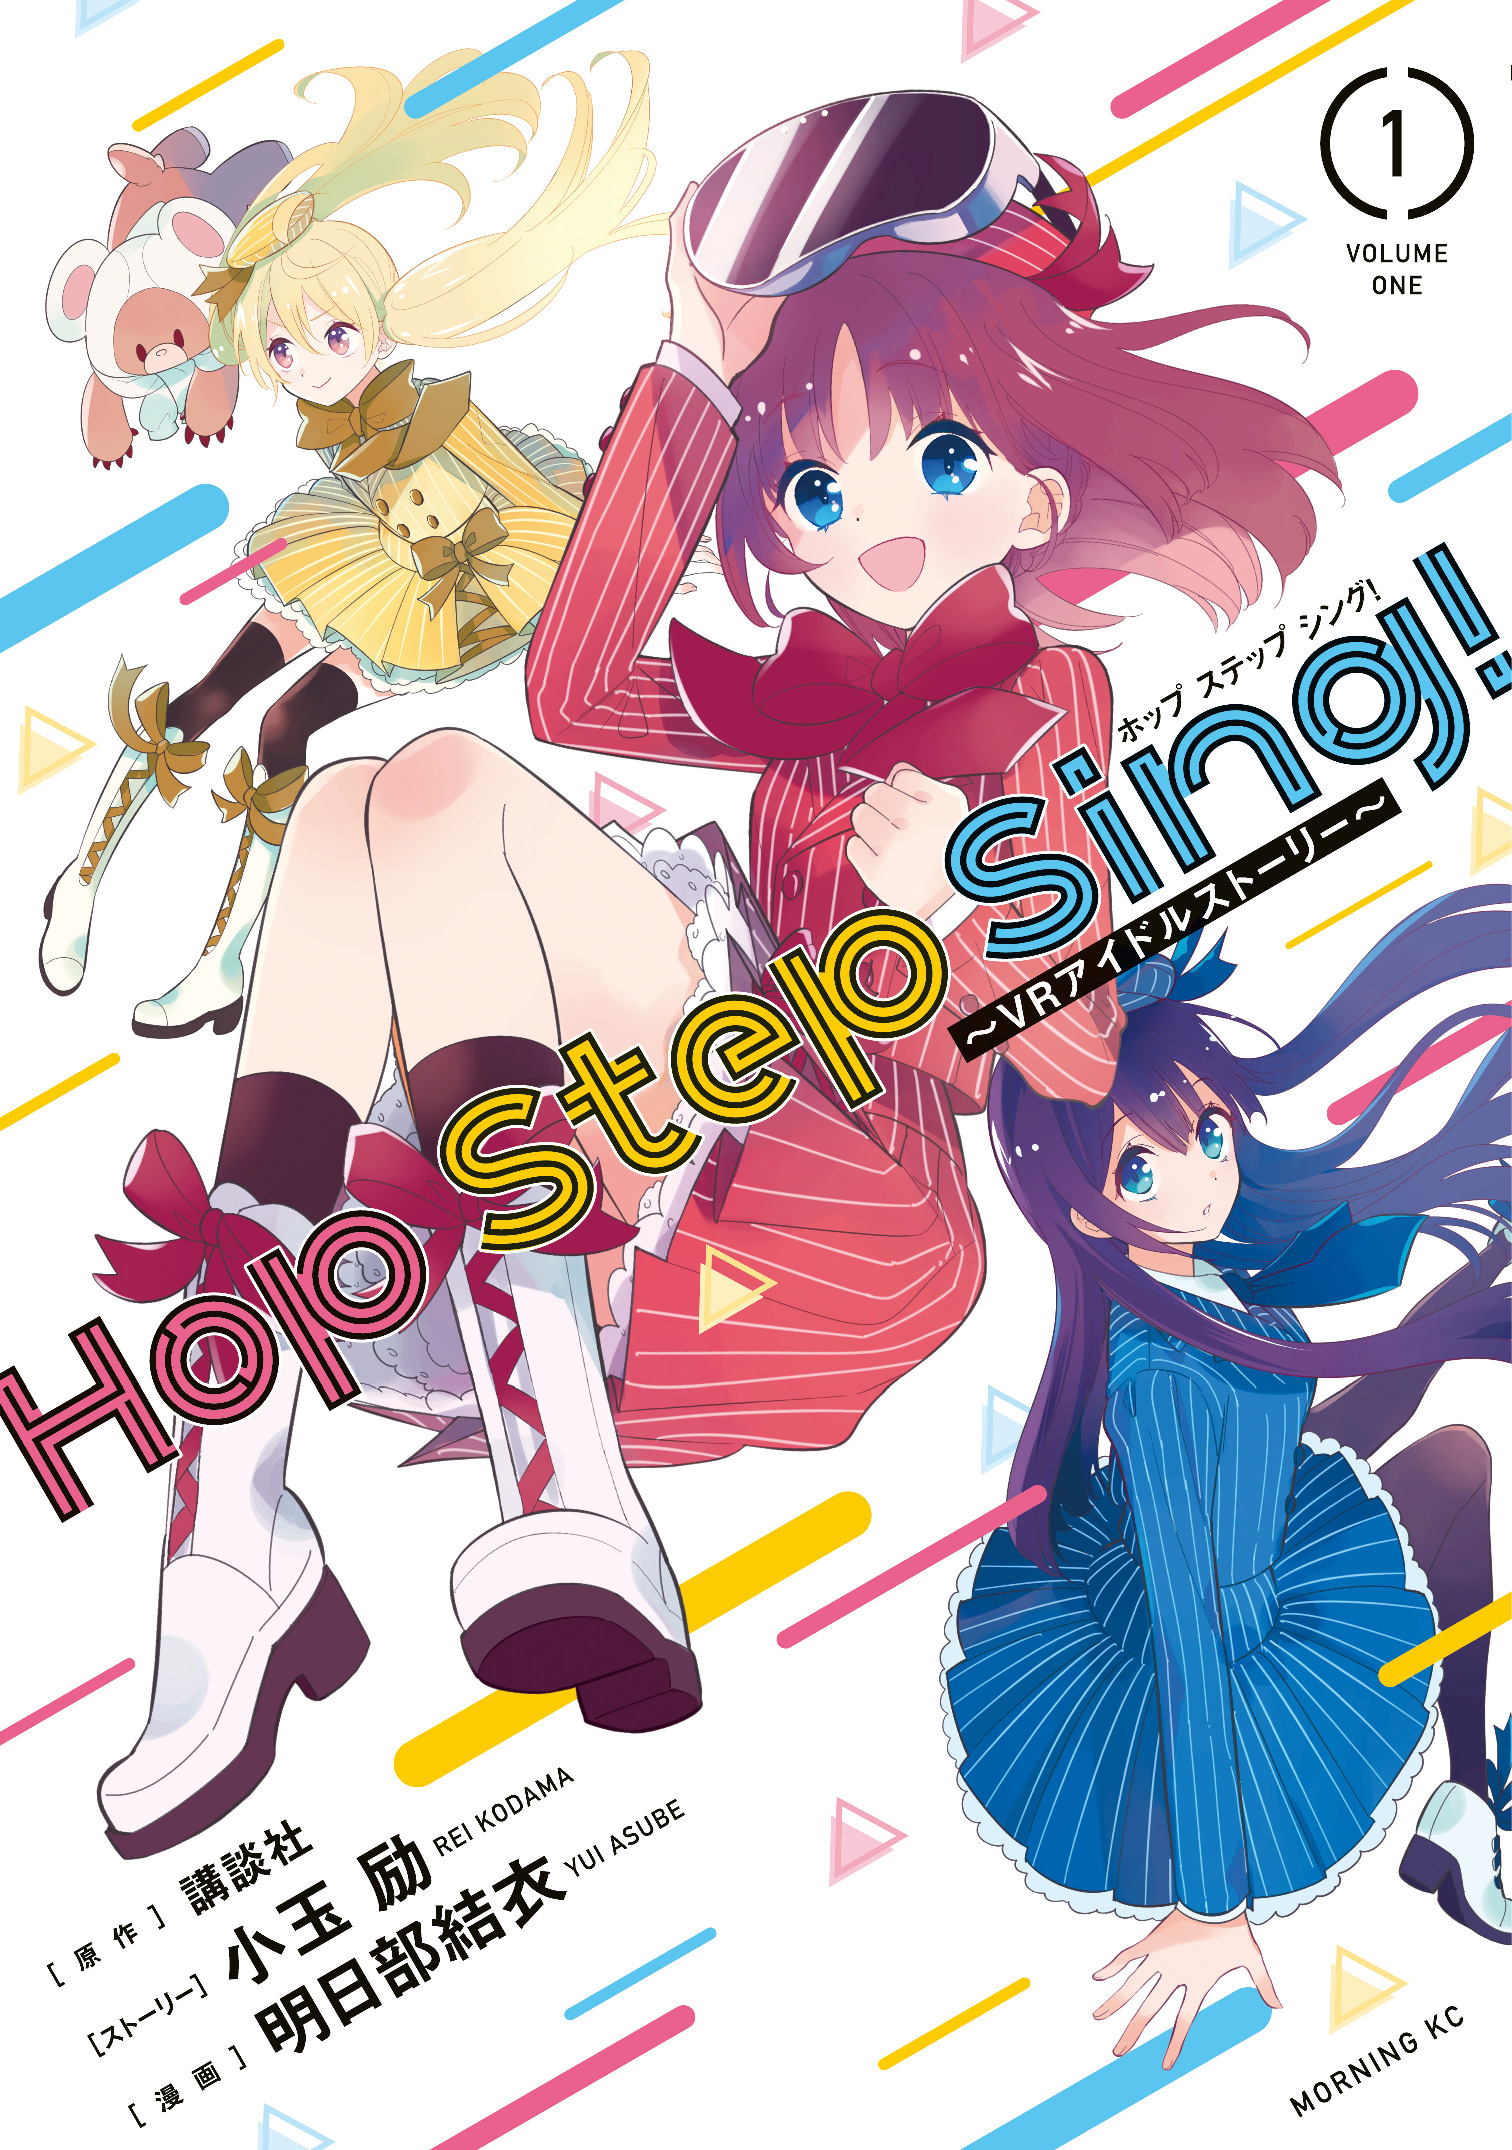 明日18時 講談社プロデュースのvrアイドル Hop Step Sing が 今週日曜放送のnhk Bs1 Cool Japan に出演 モーニング公式サイト 講談社の青年漫画誌